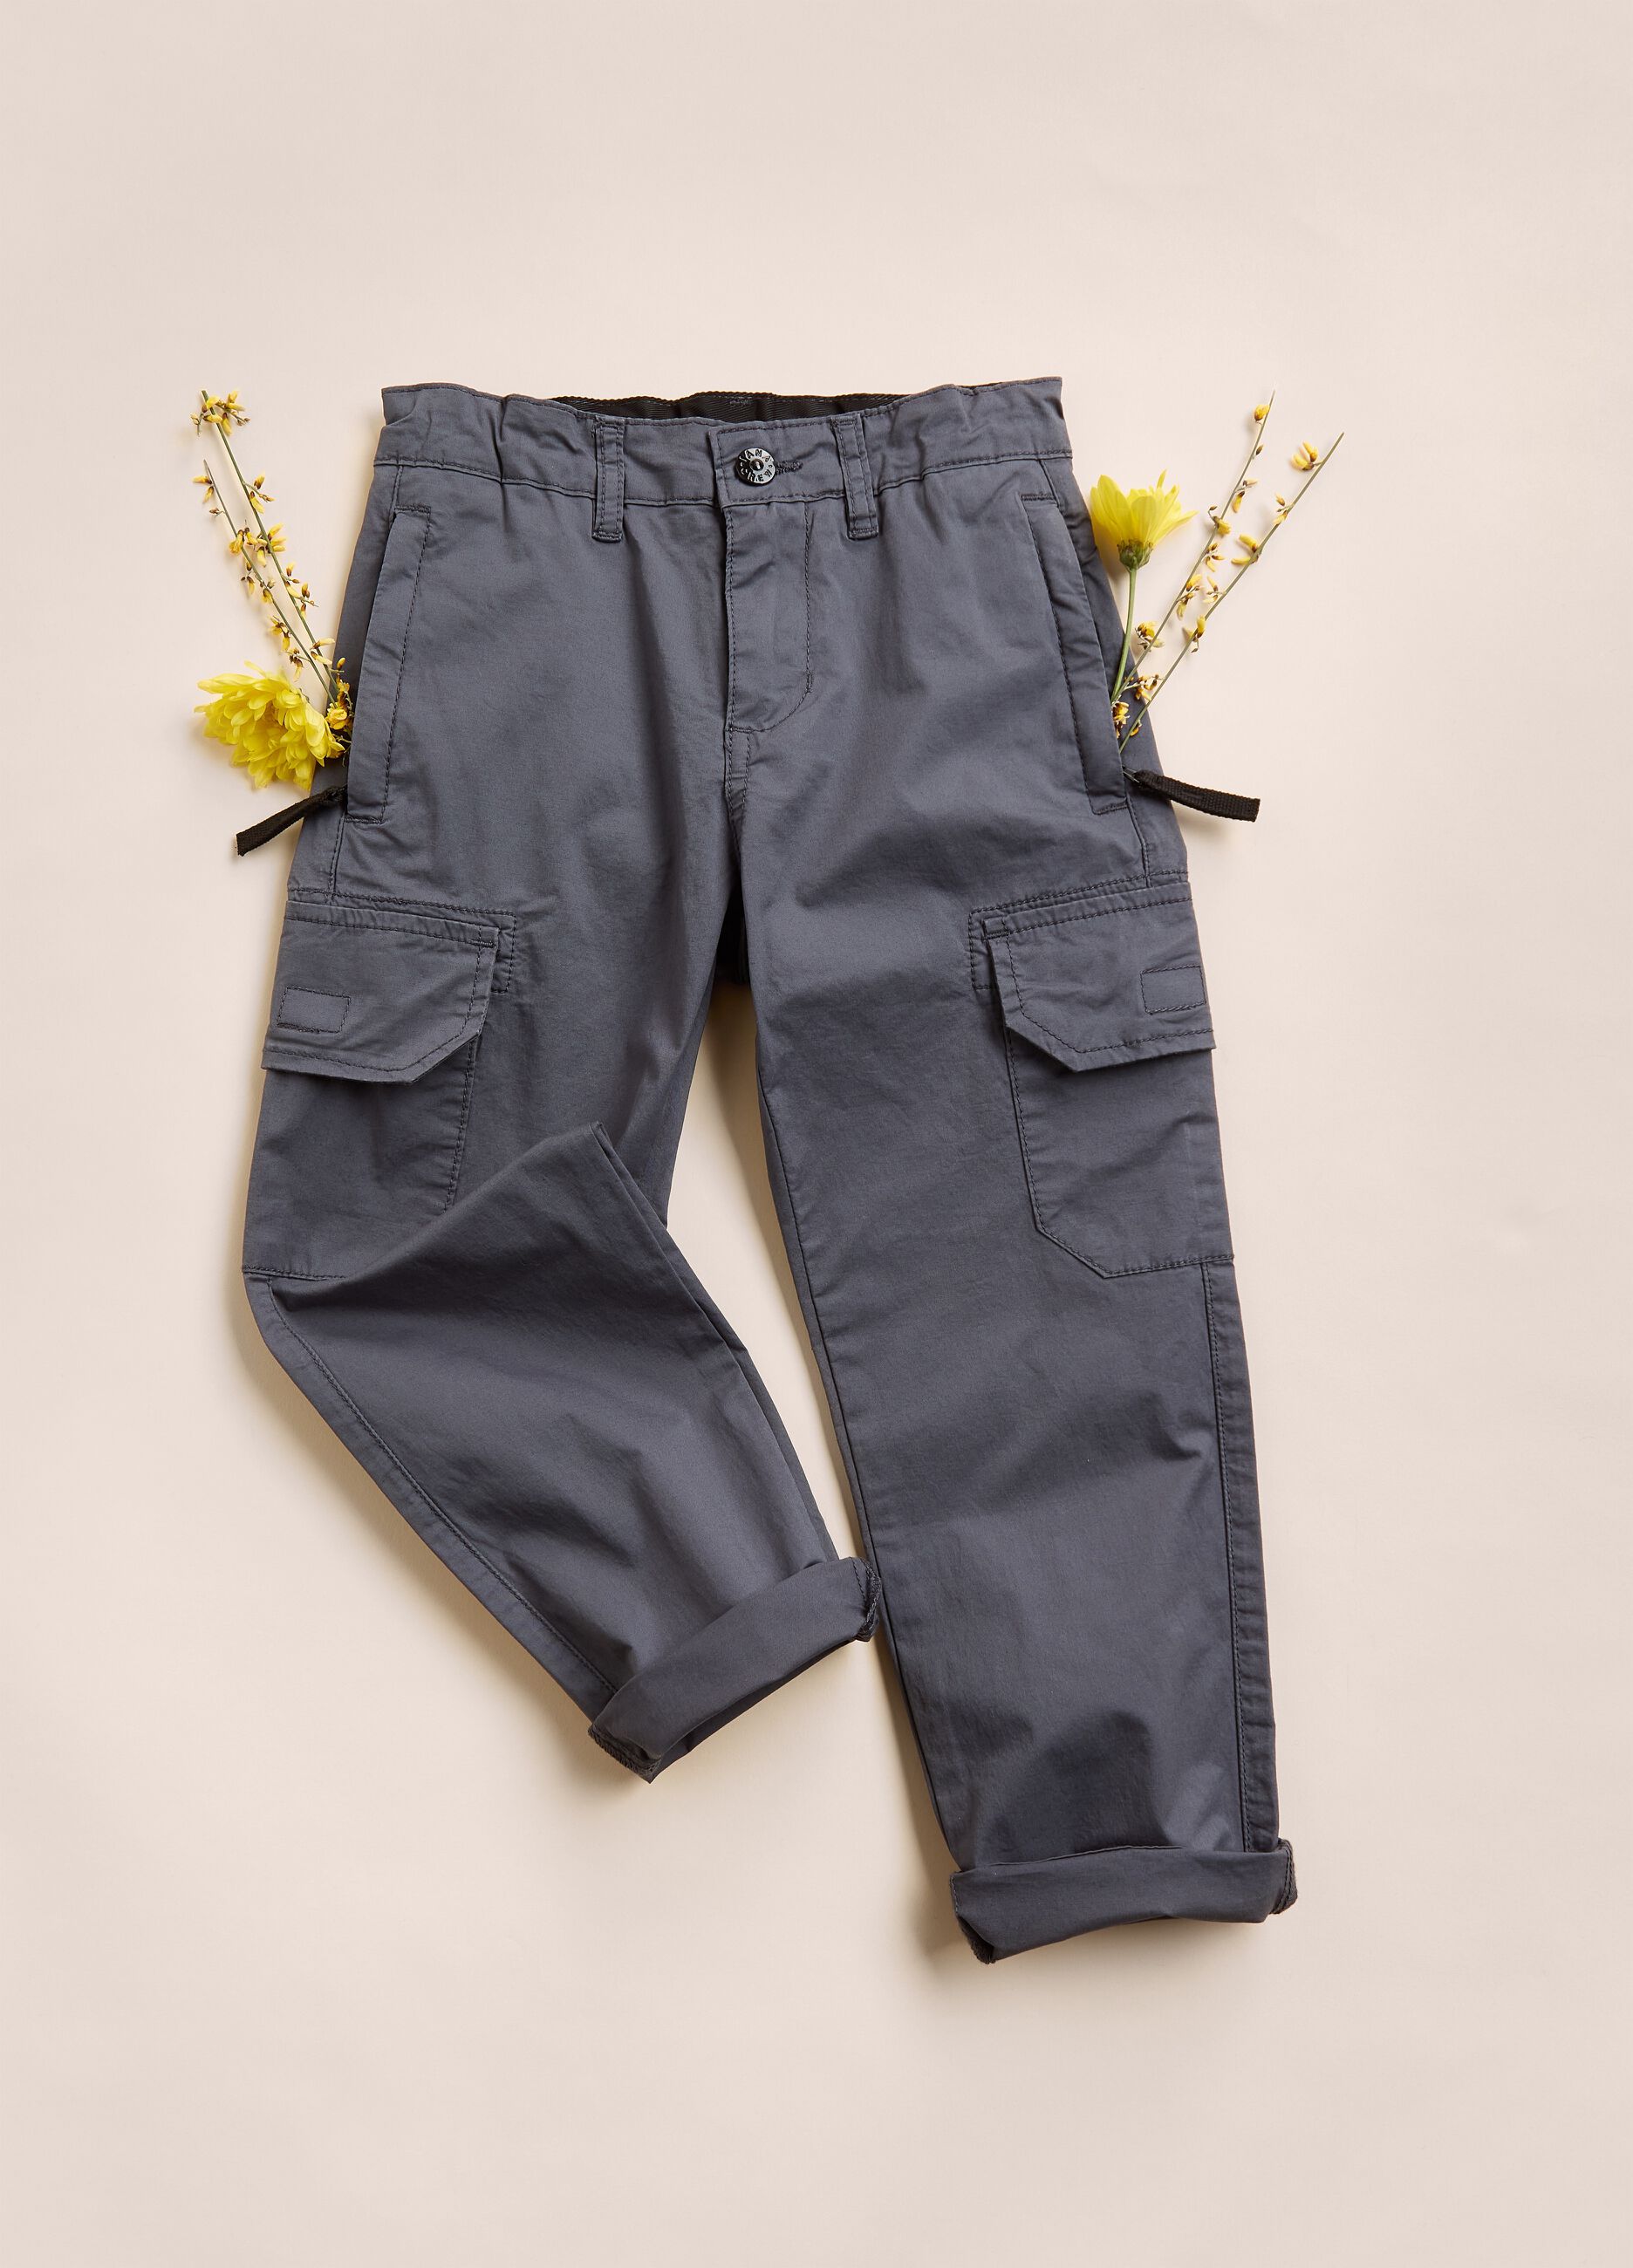 Pantaloni stile cargo in cotone elasticizzato IANA